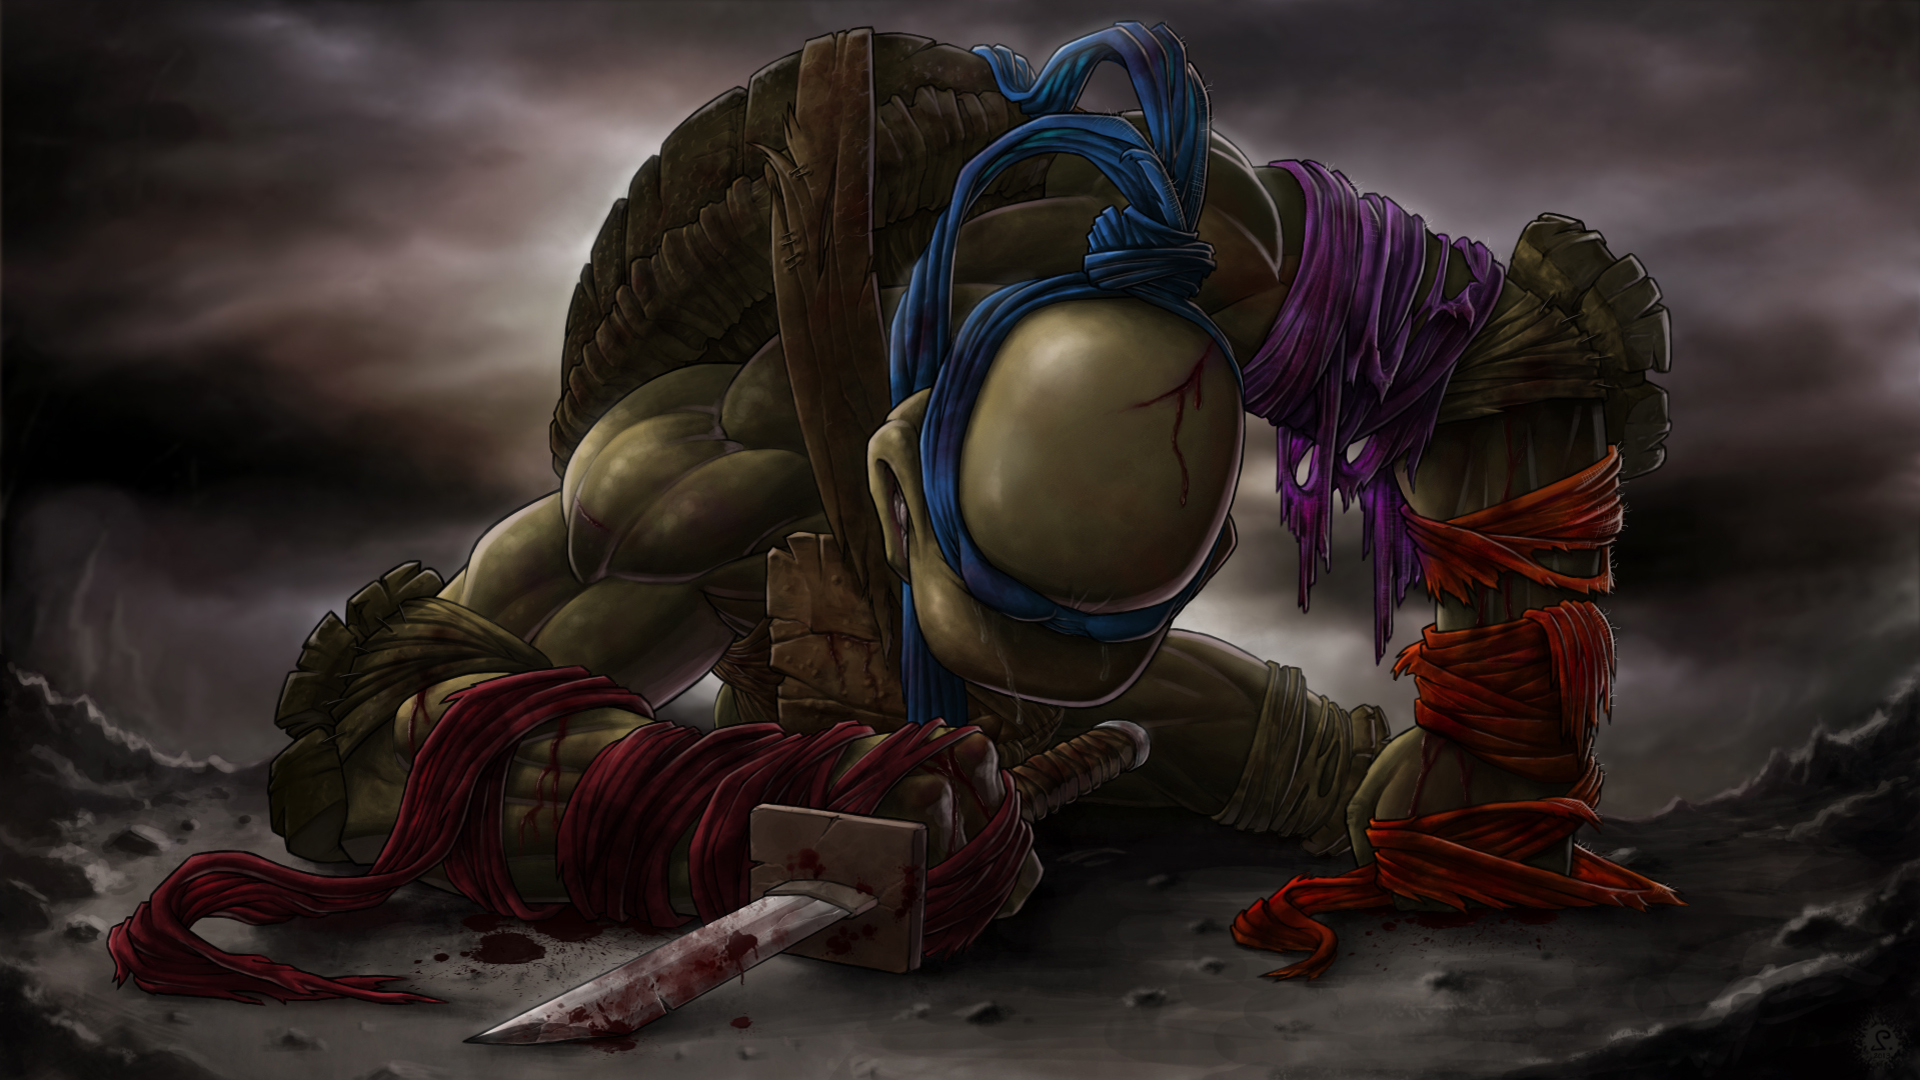 Leonardo Teenage Mutant Ninja Turtles HD Background Wallpaper